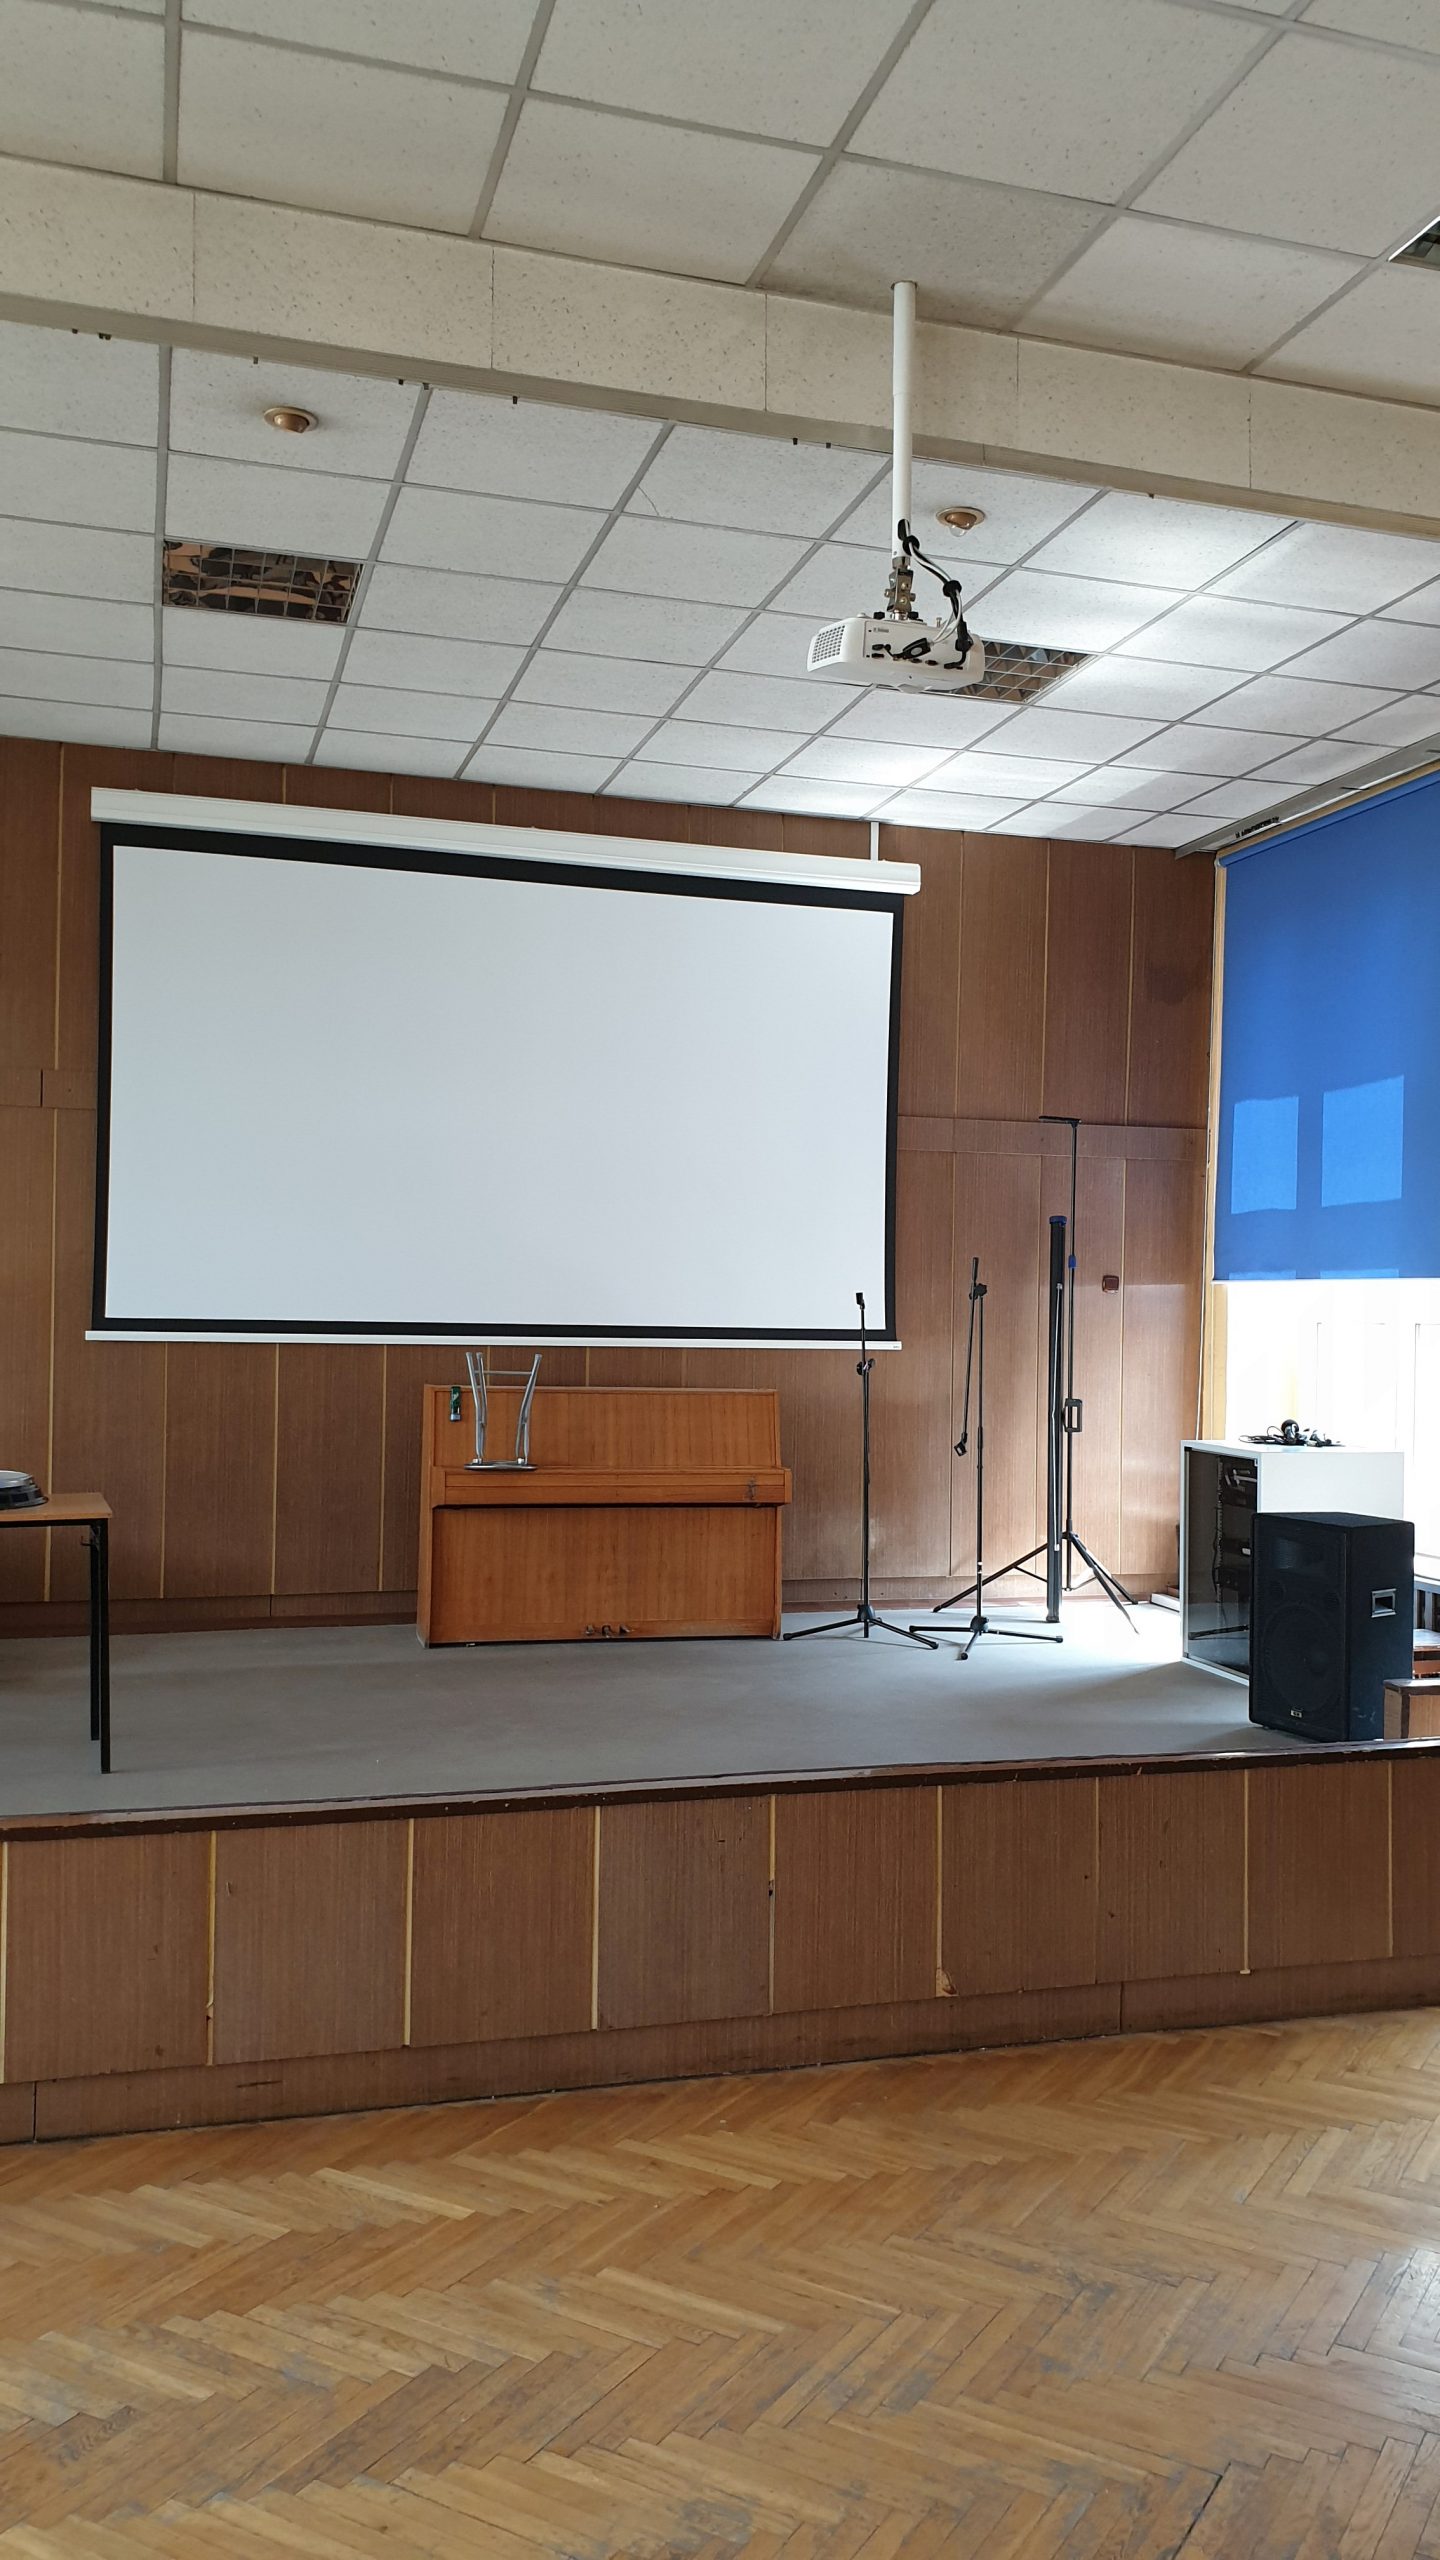 Katowice, SP 1. Wykonanie sieci LAN w salach szkolnych, montaż ekranu projekcyjnego, projektora wraz z urządzeniem sterującym oraz modernizacja nagłośnienia.